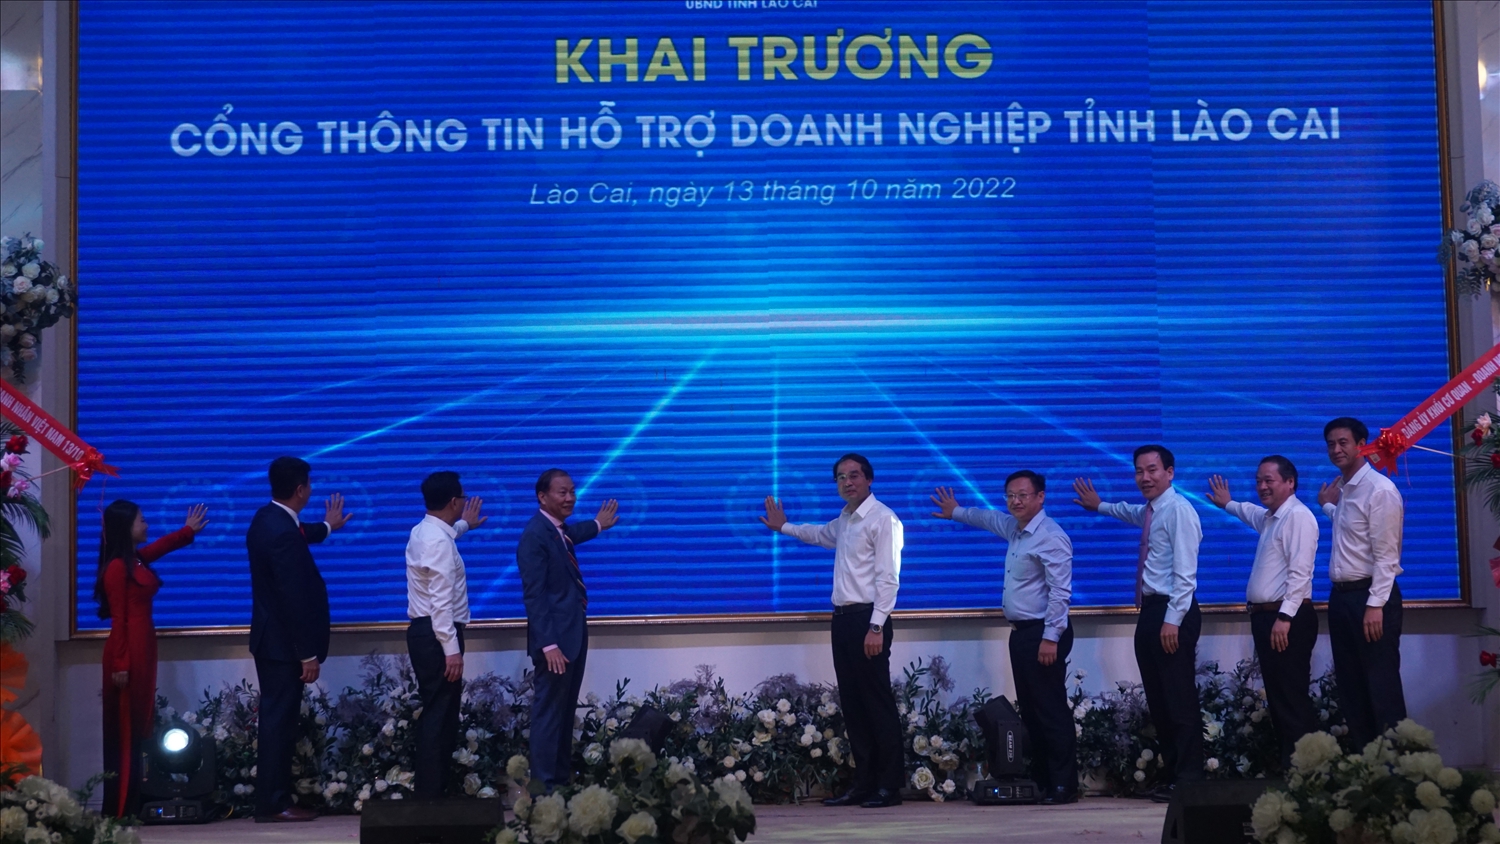 Tỉnh Lào Cai khai trương Cổng thông tin hỗ trợ doanh nghiệp vào tháng 10/2022 vừa qua